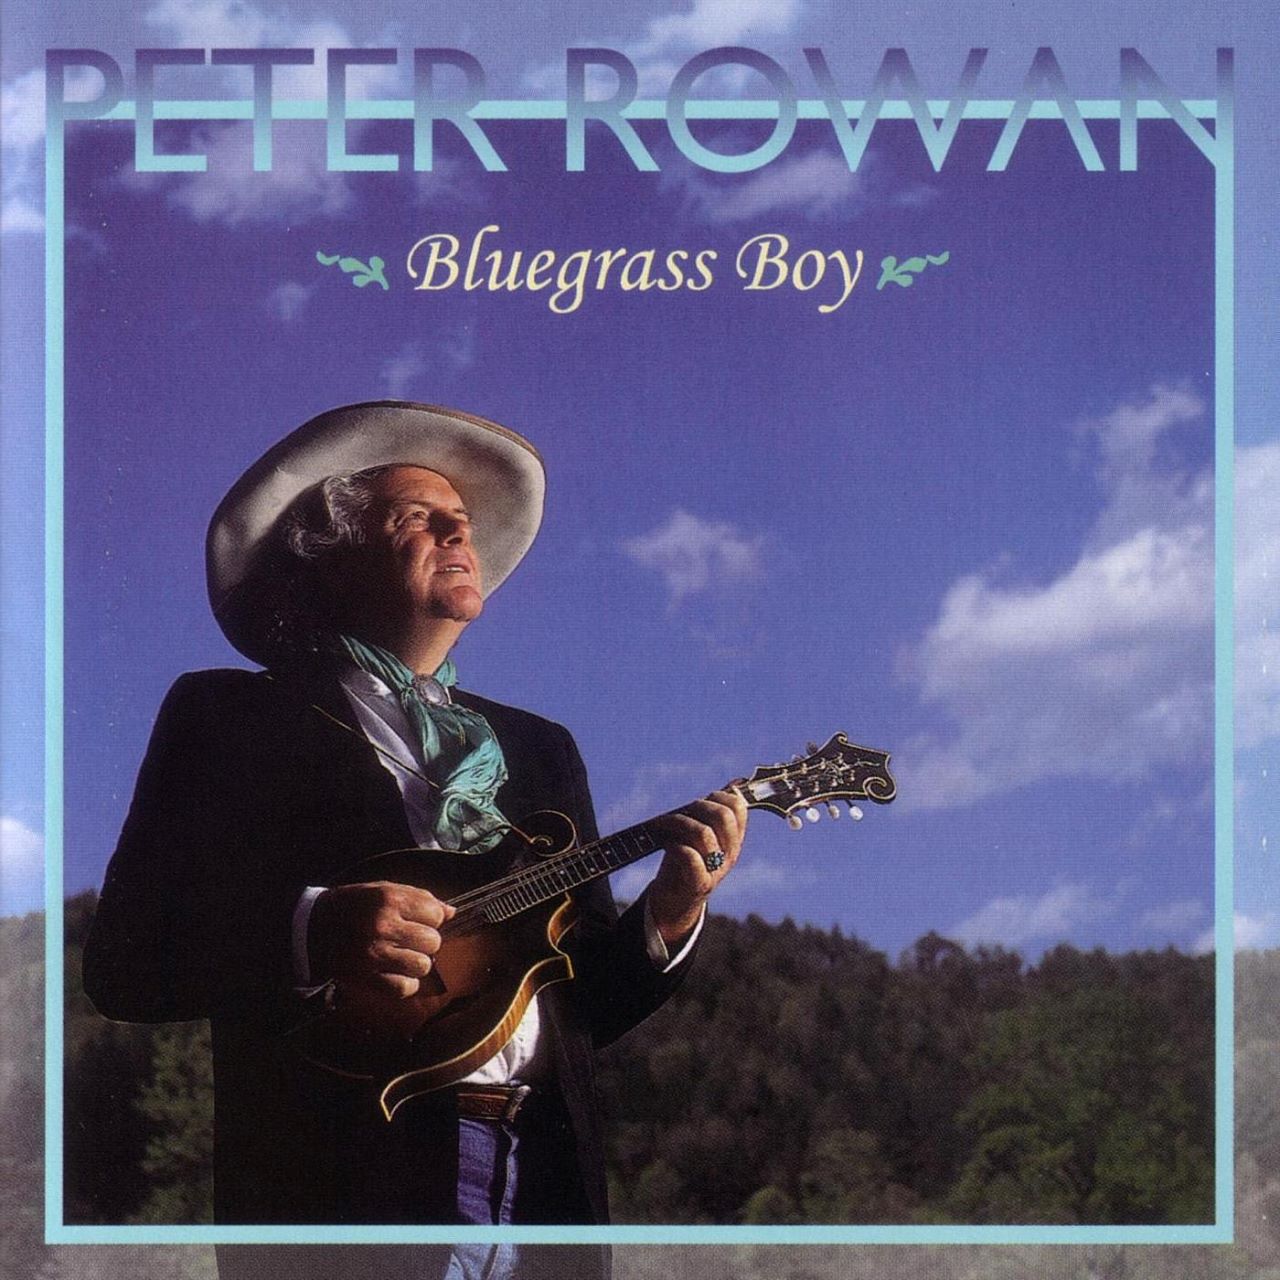 Peter Rowan - Bluegrass Boy coveer album